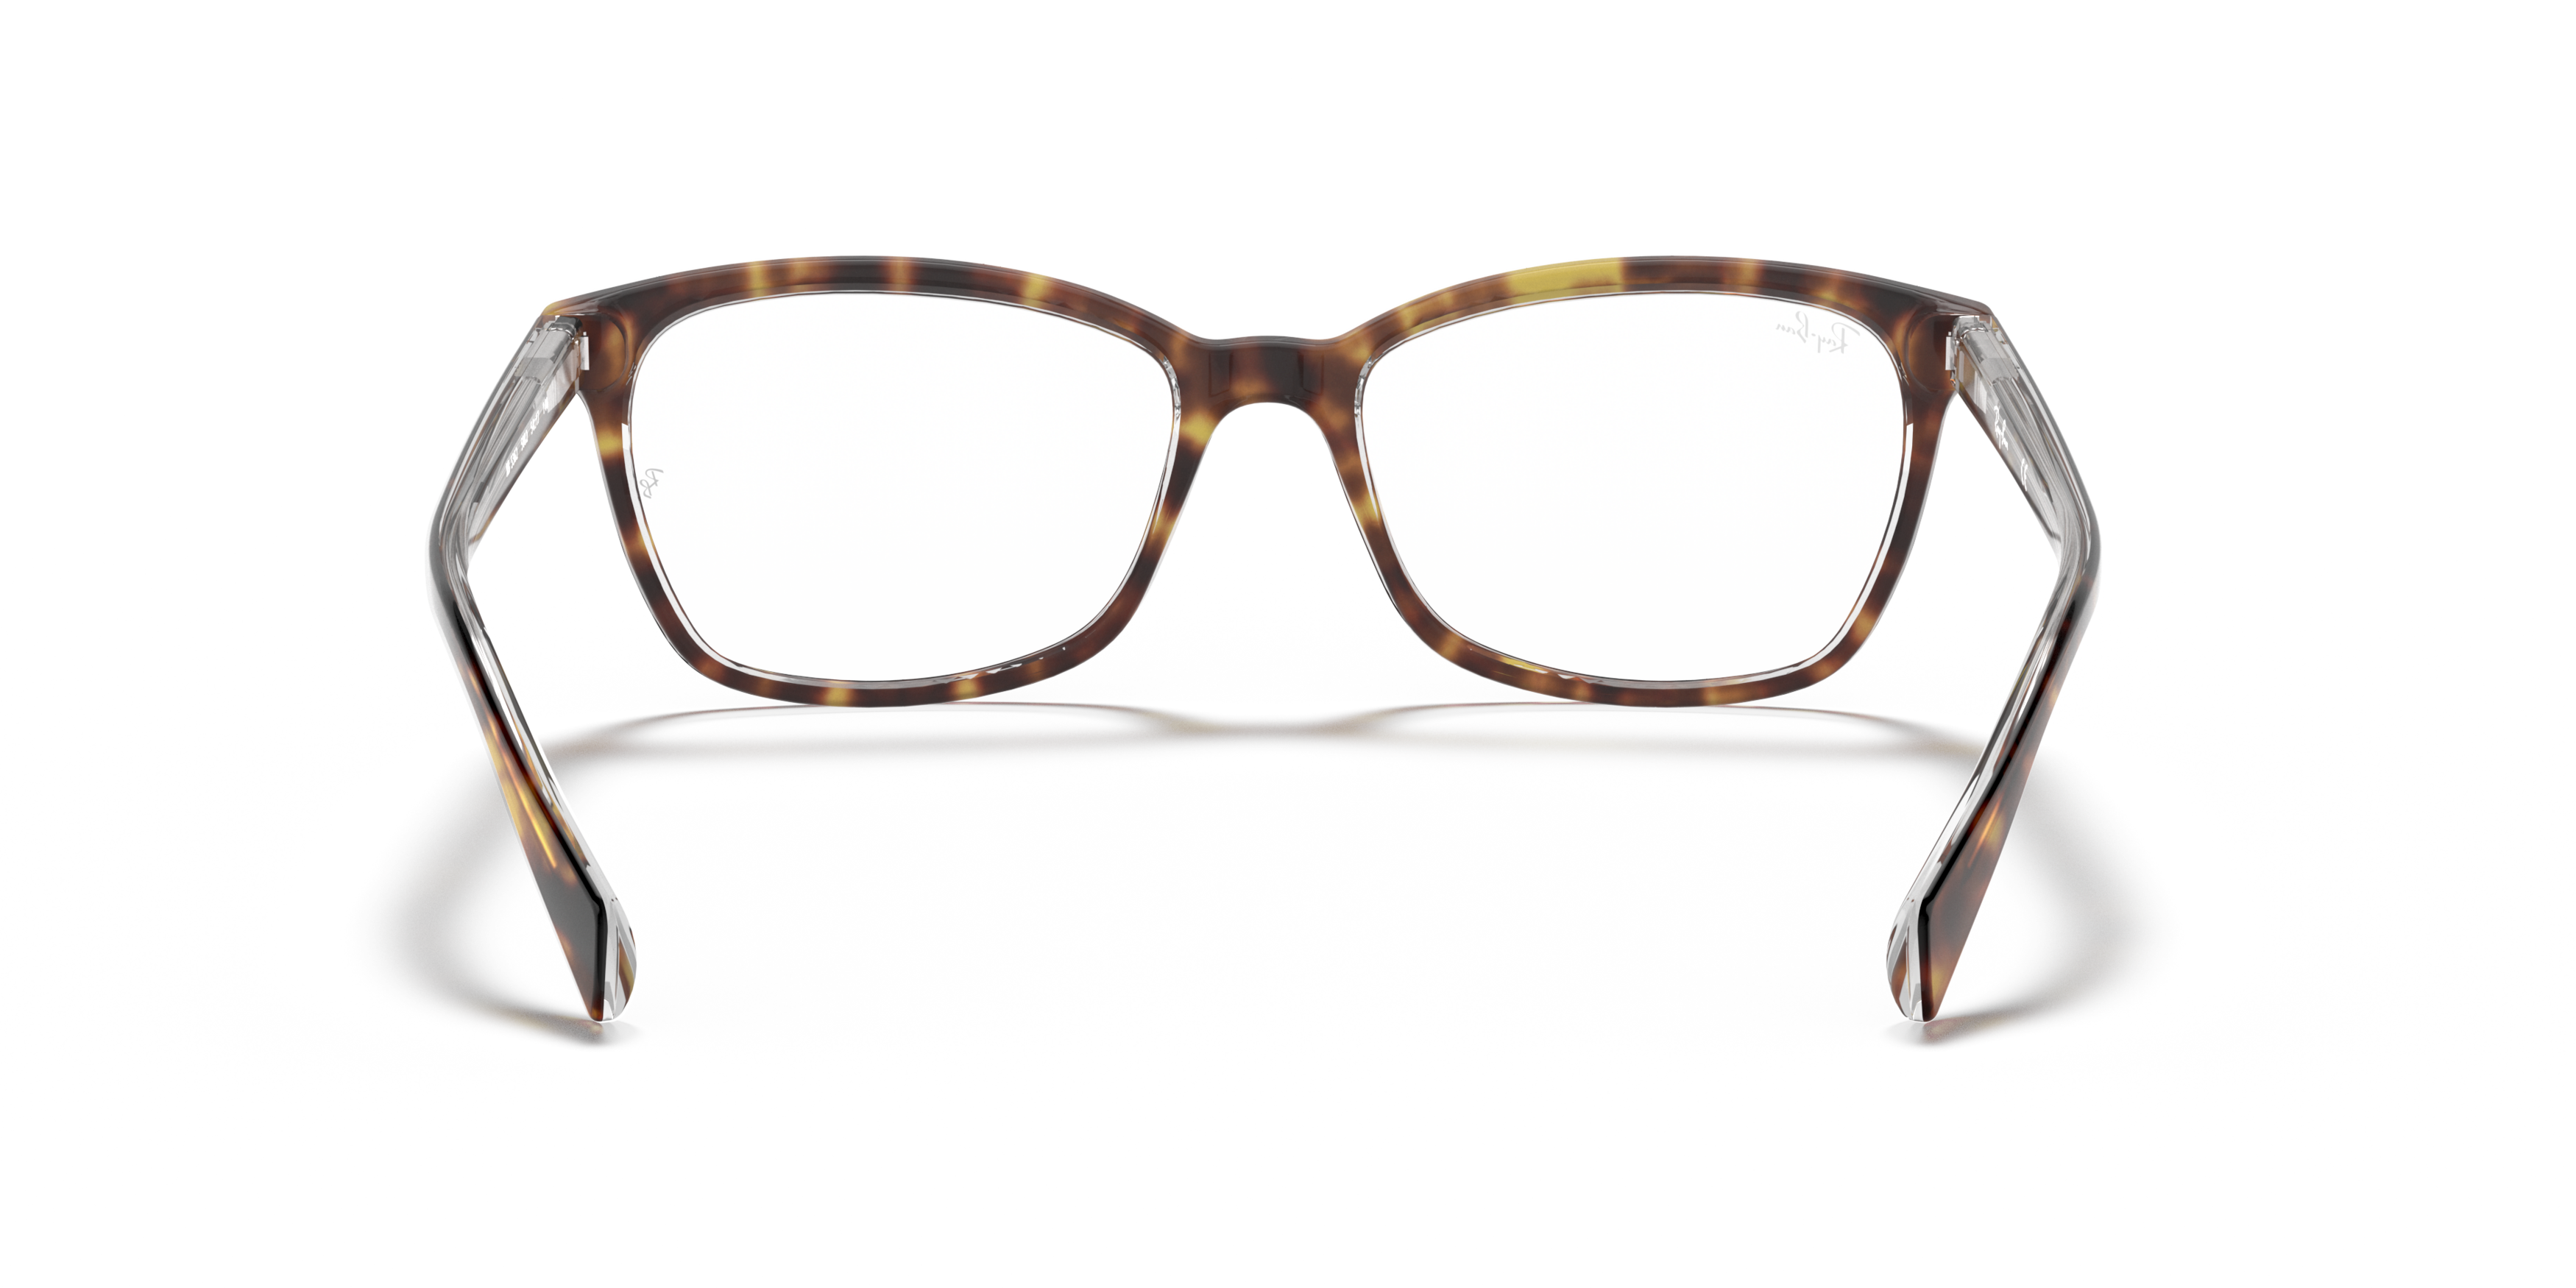 Detail02 Ray-Ban 0RX5362 5082 Glasögonbåge Sköldpaddsfärgad